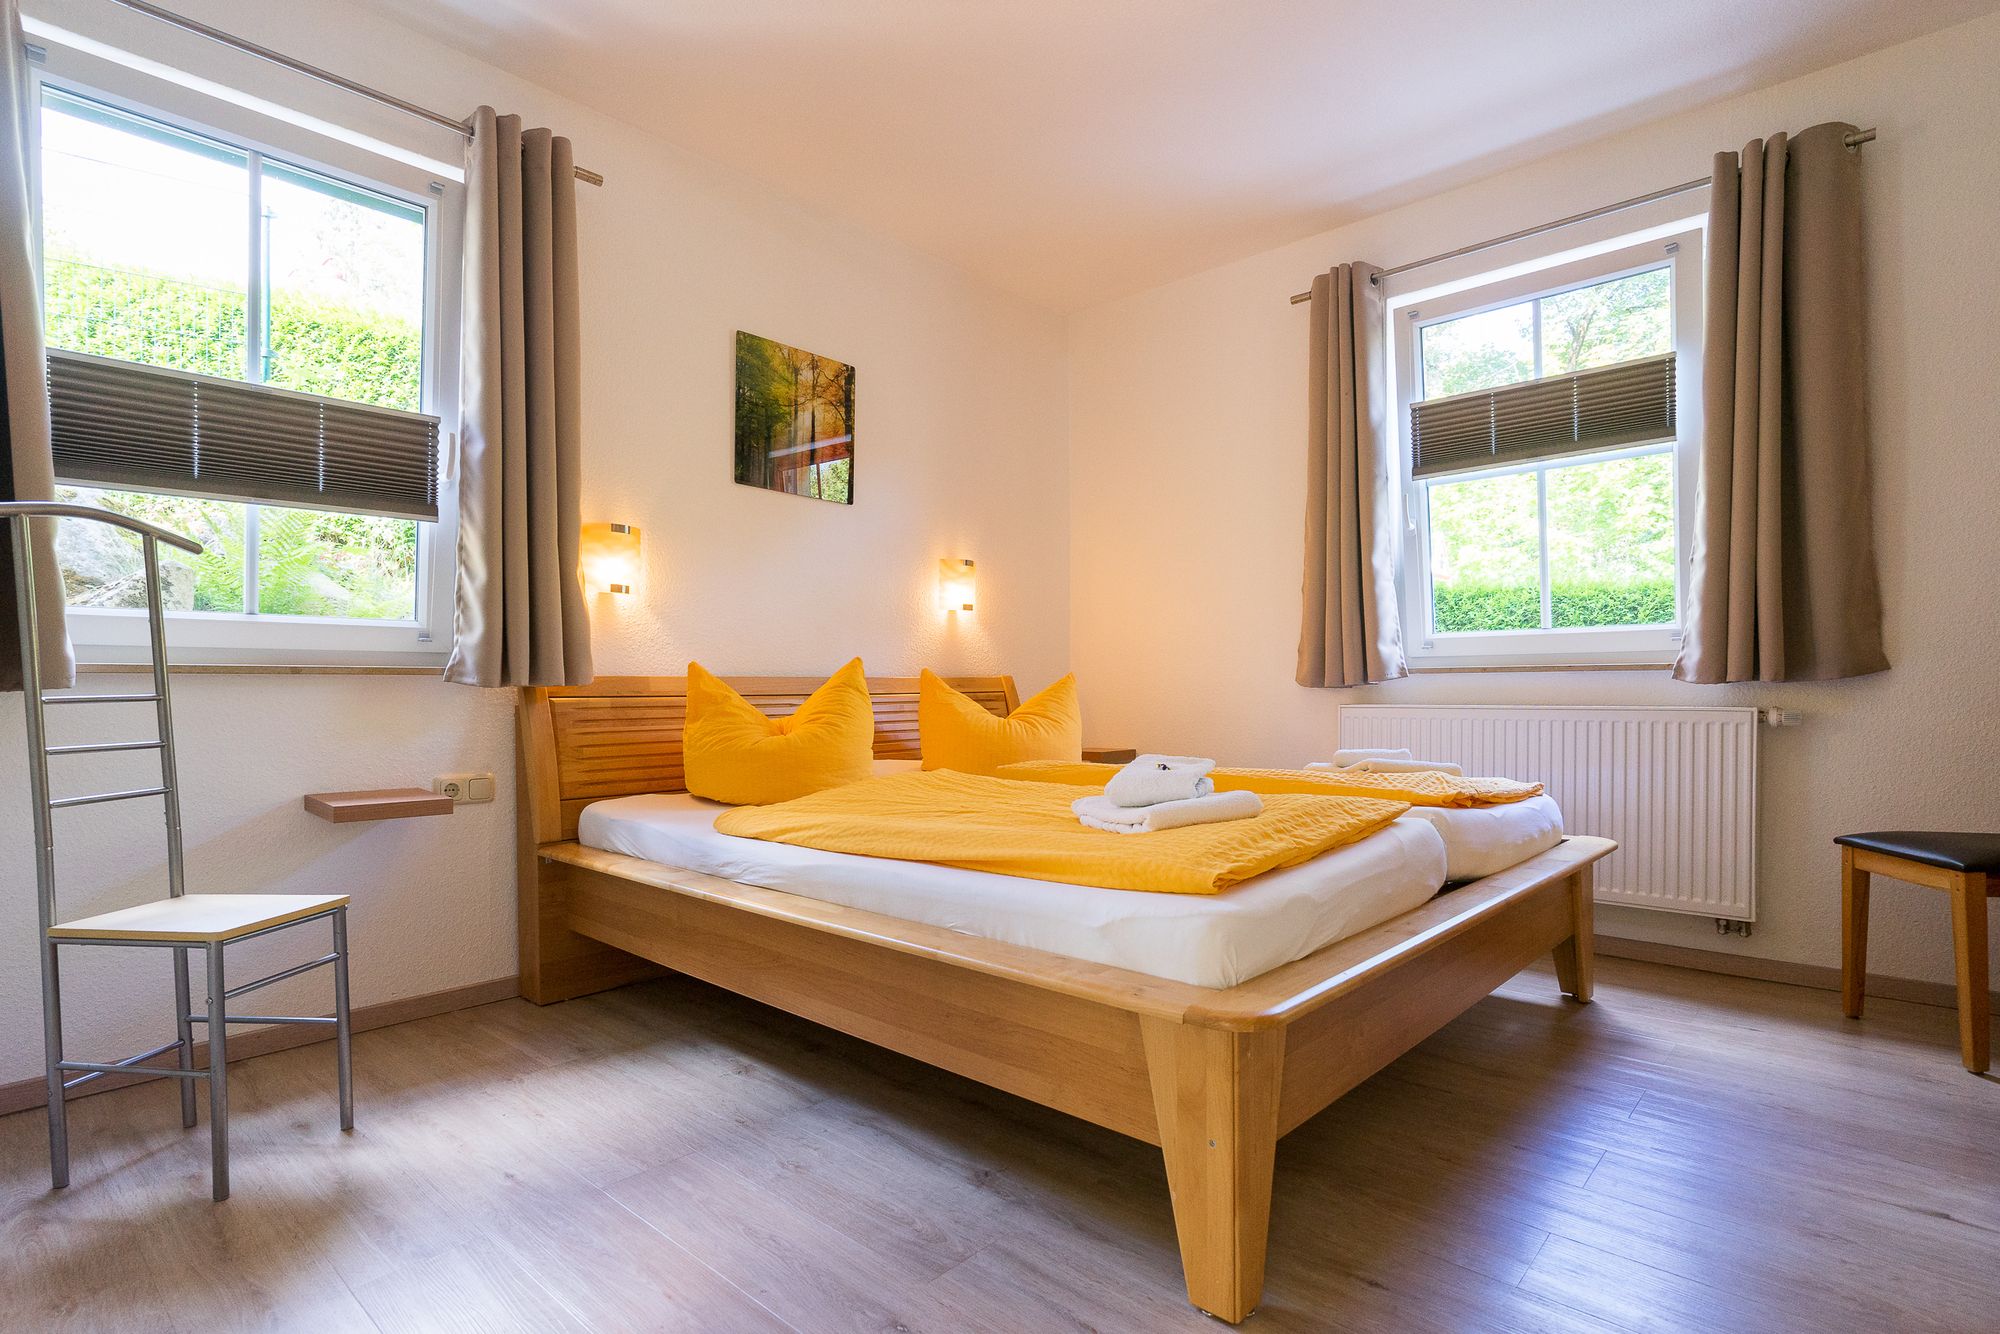 Helle, freundliche Schlafzimmer in den Ferienwohnungen versprechen erholsamen Schlaf - FW Kirchblick. (Bild: Fam. Michael)